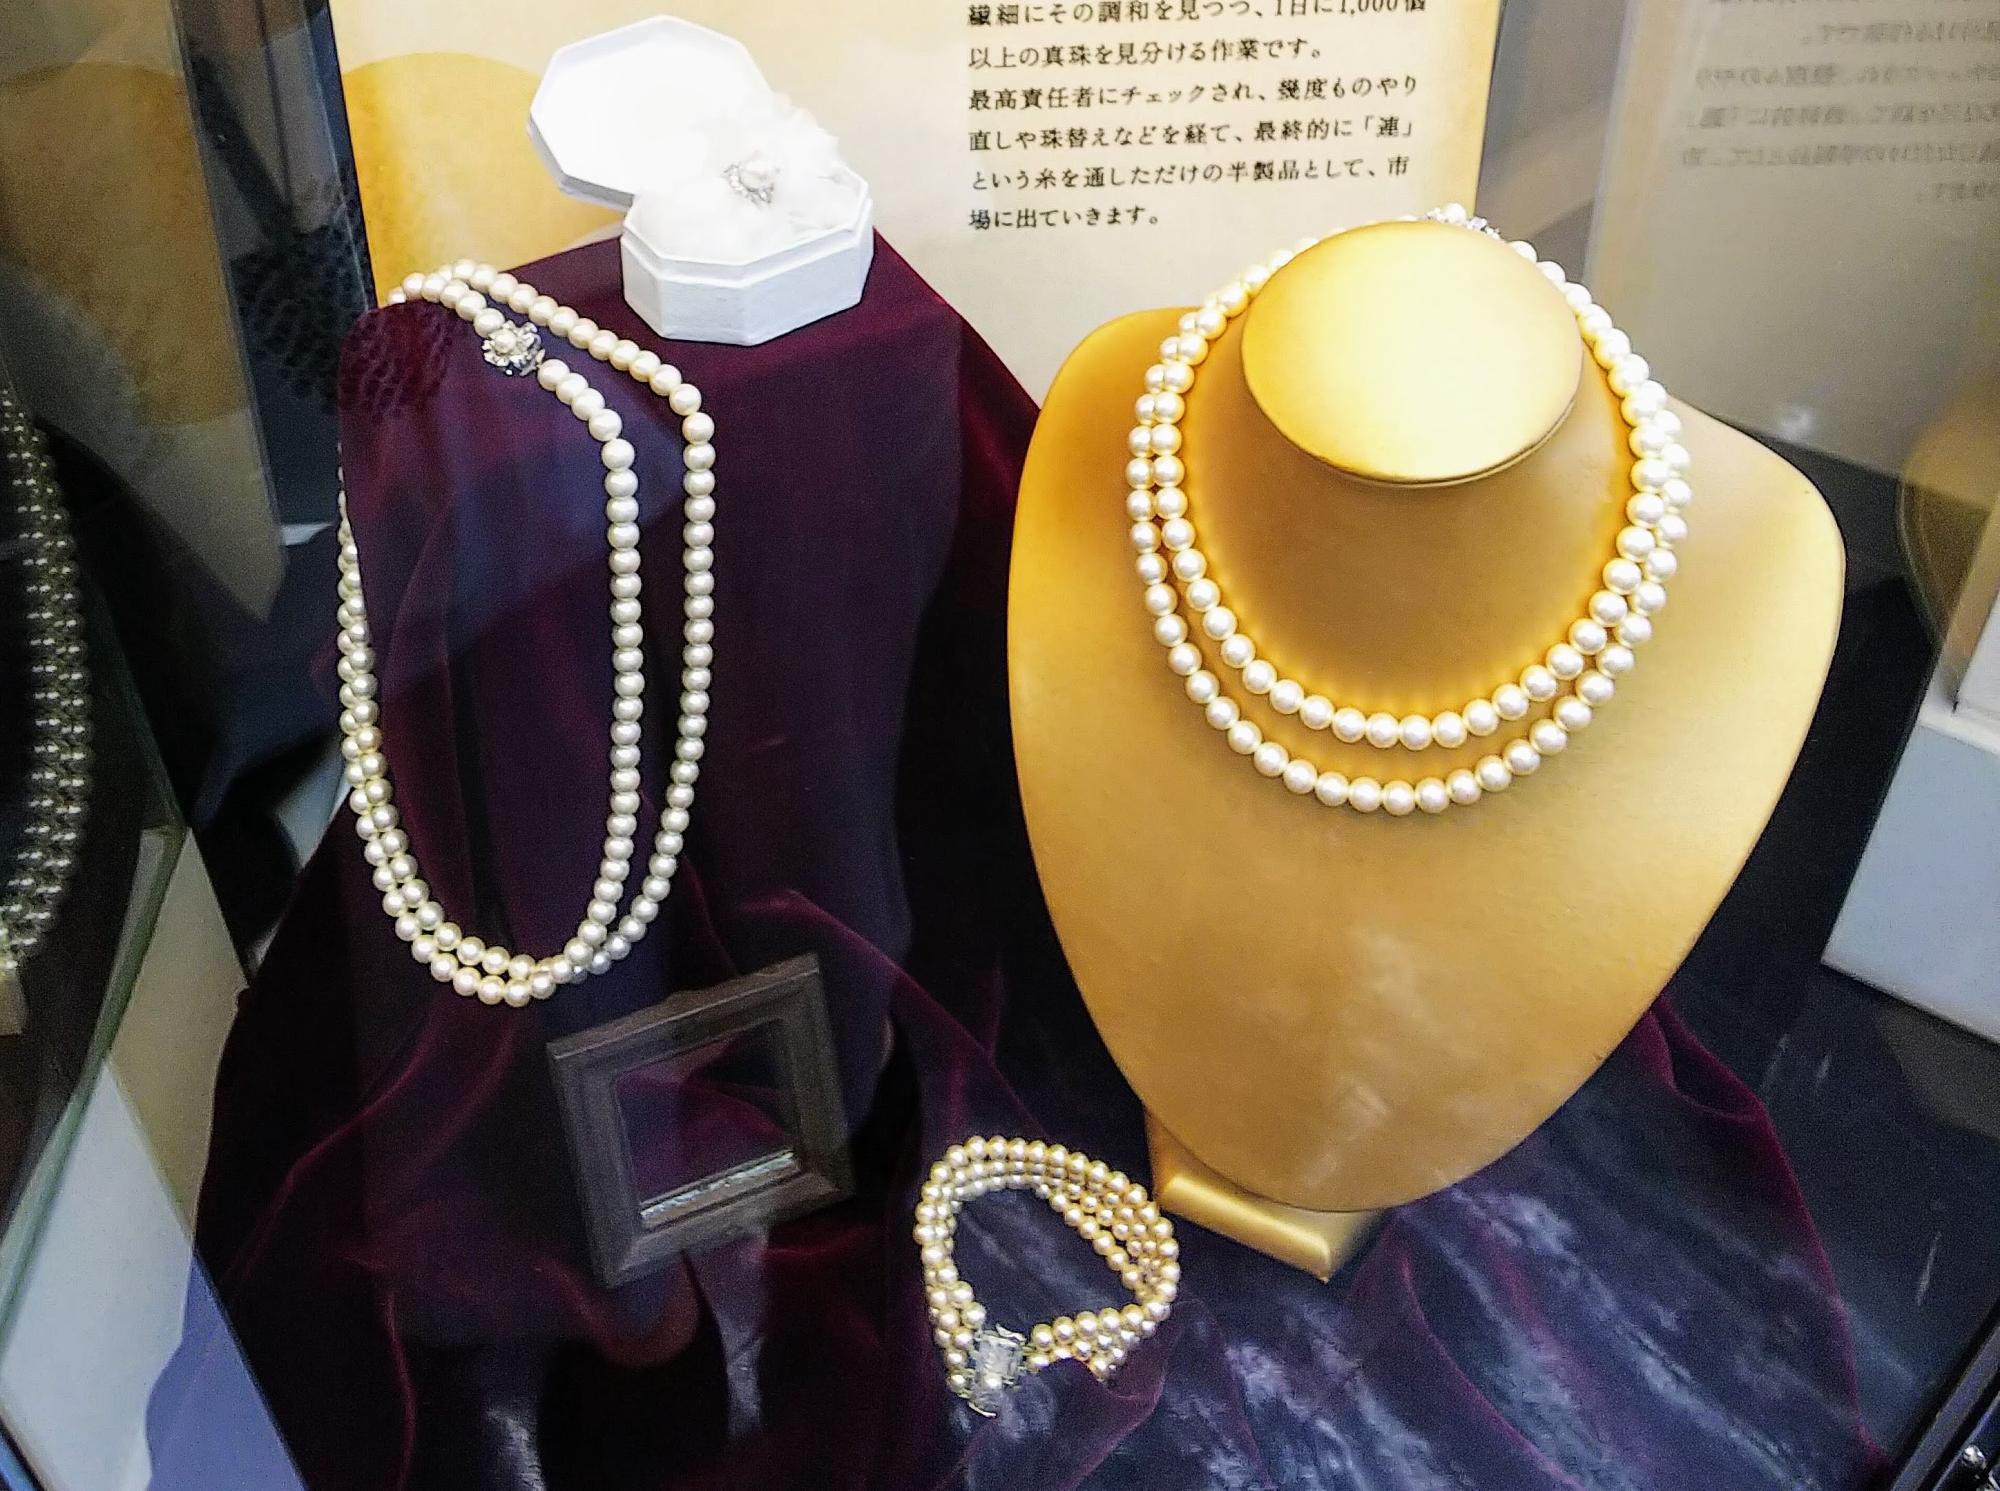 一つの連に少しずつ大きさの違う真珠が選ばれ並べられている